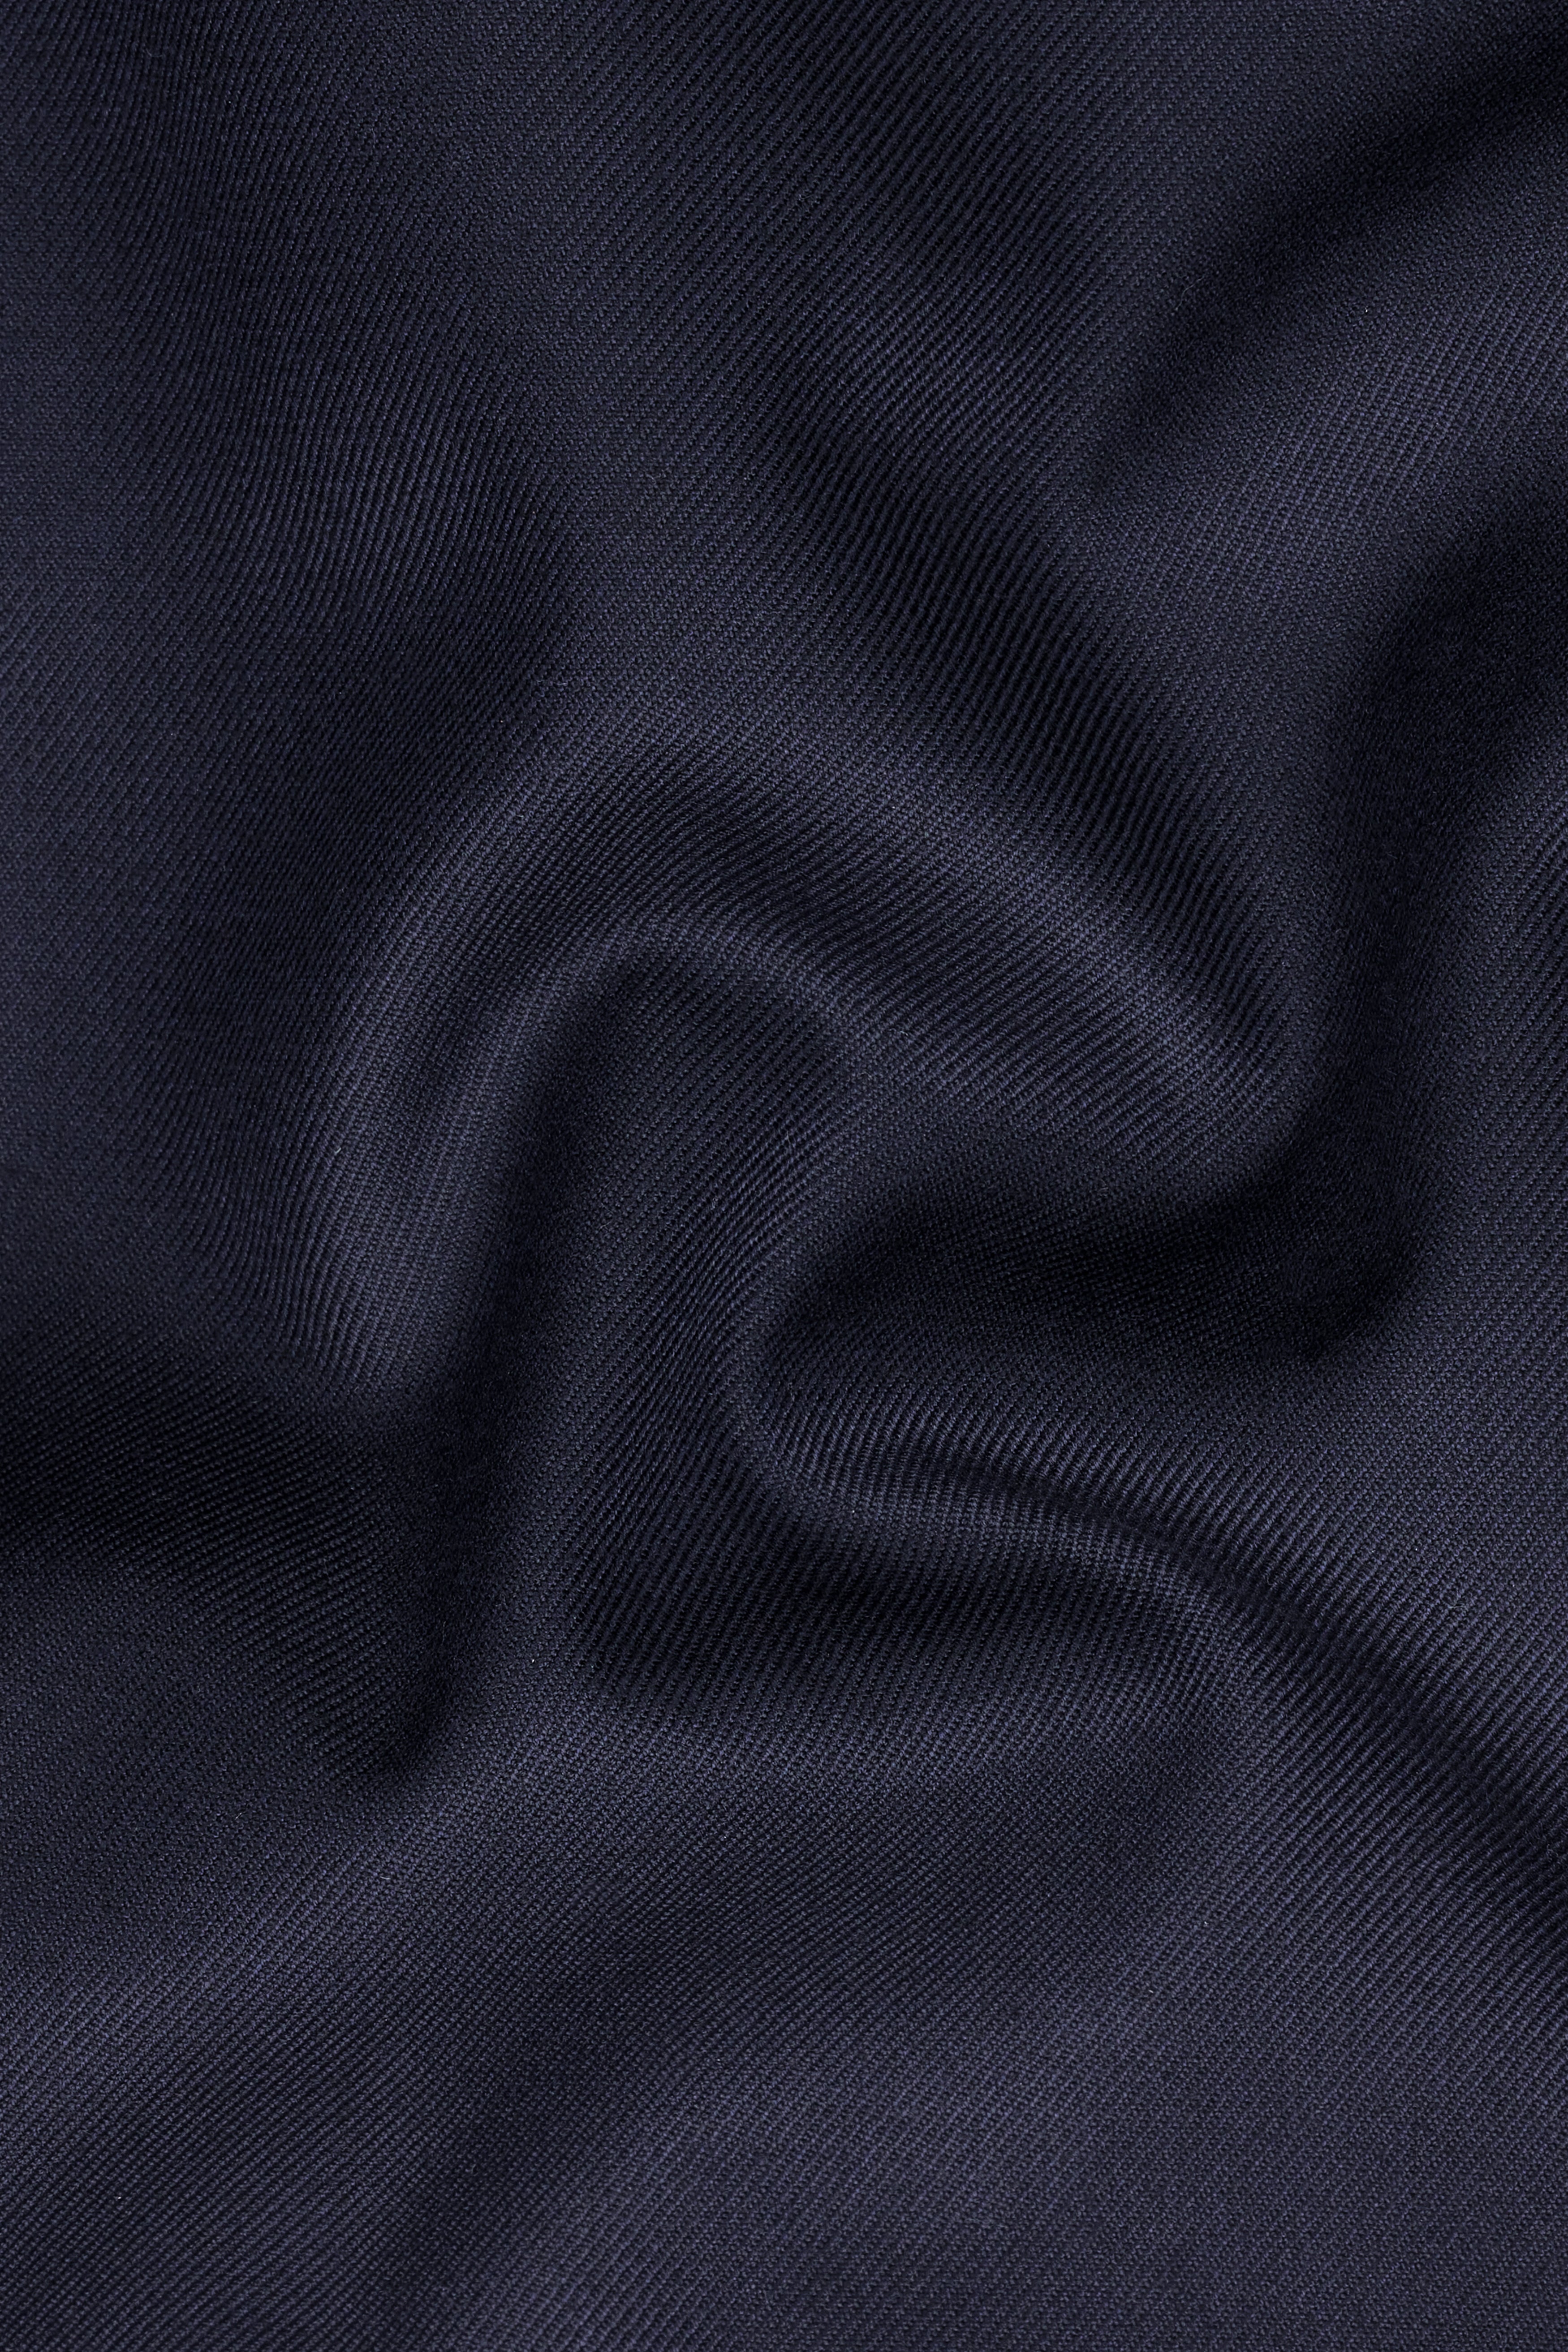 Mirage Blue Wool Rich  Pant T2727-28, T2727-30, T2727-32, T2727-34, T2727-36, T2727-38, T2727-40, T2727-42, T2727-44